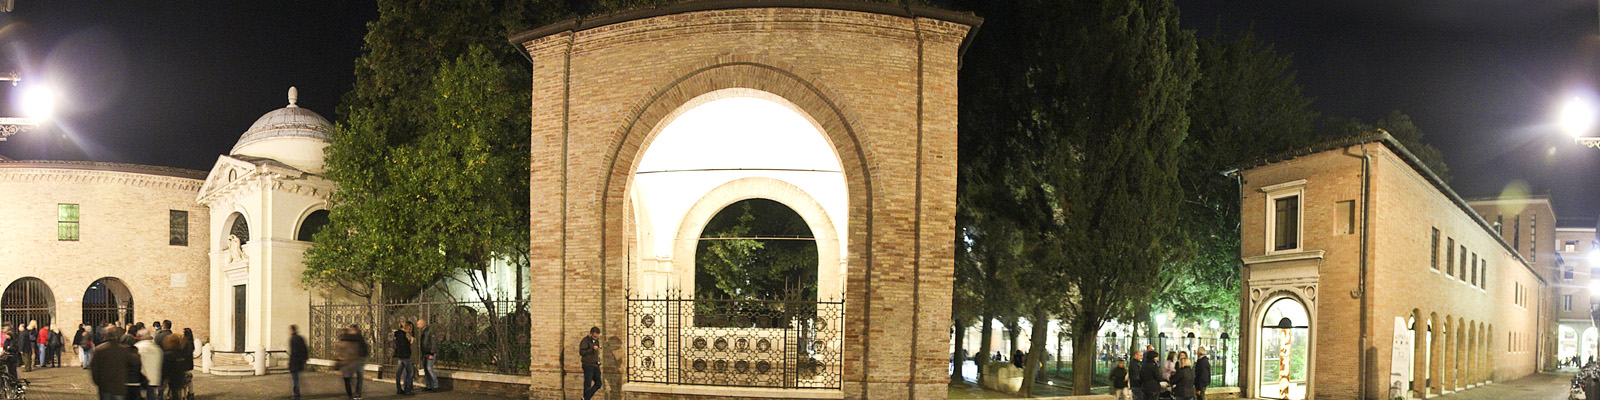 I luoghi di Dante a Ravenna per un nuovo riconoscimento UNESCO